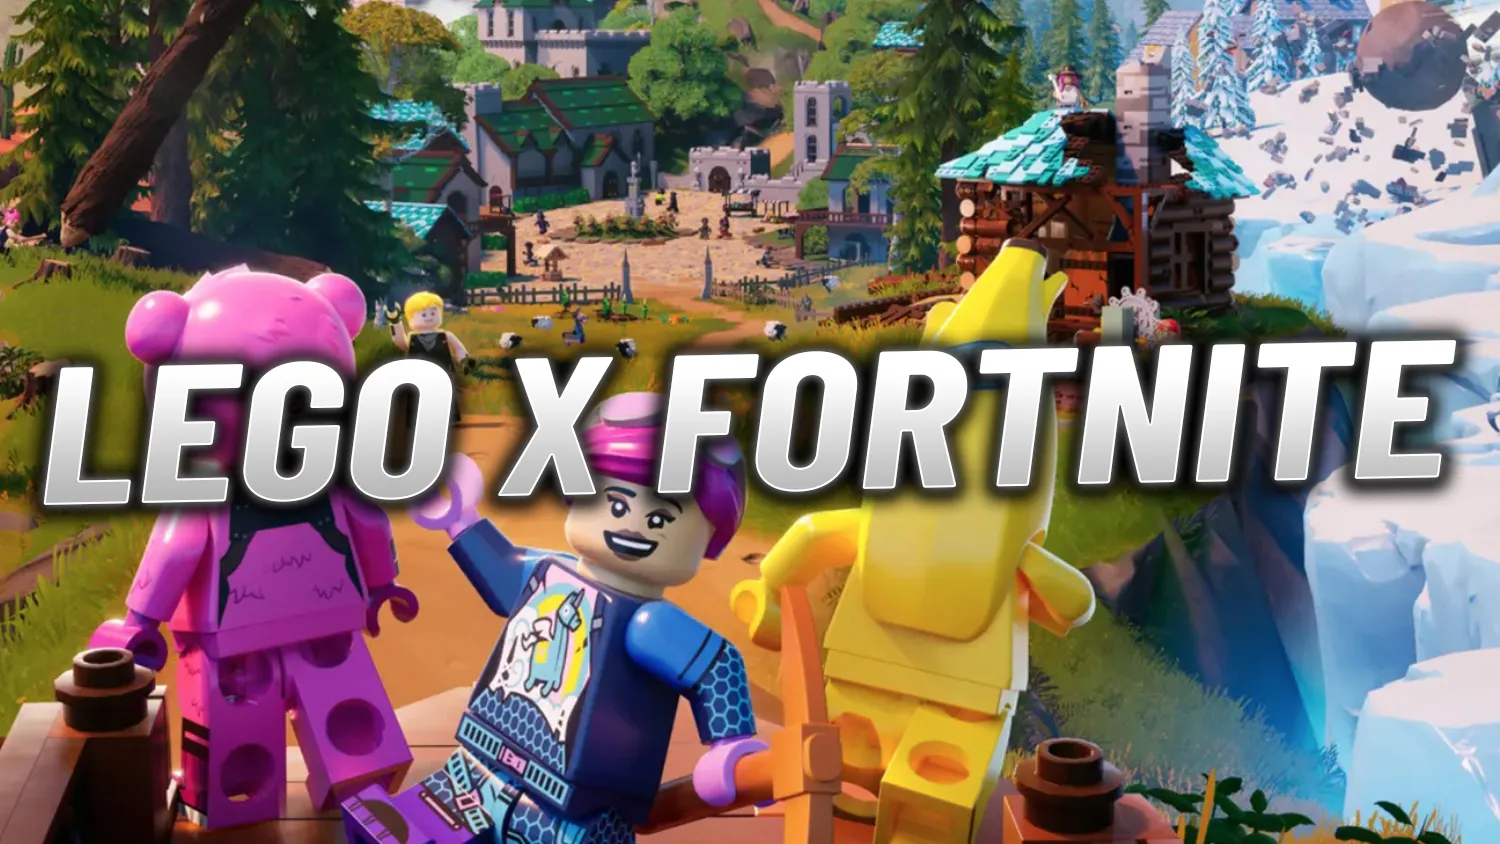 Fortnite LEGO Trailer 